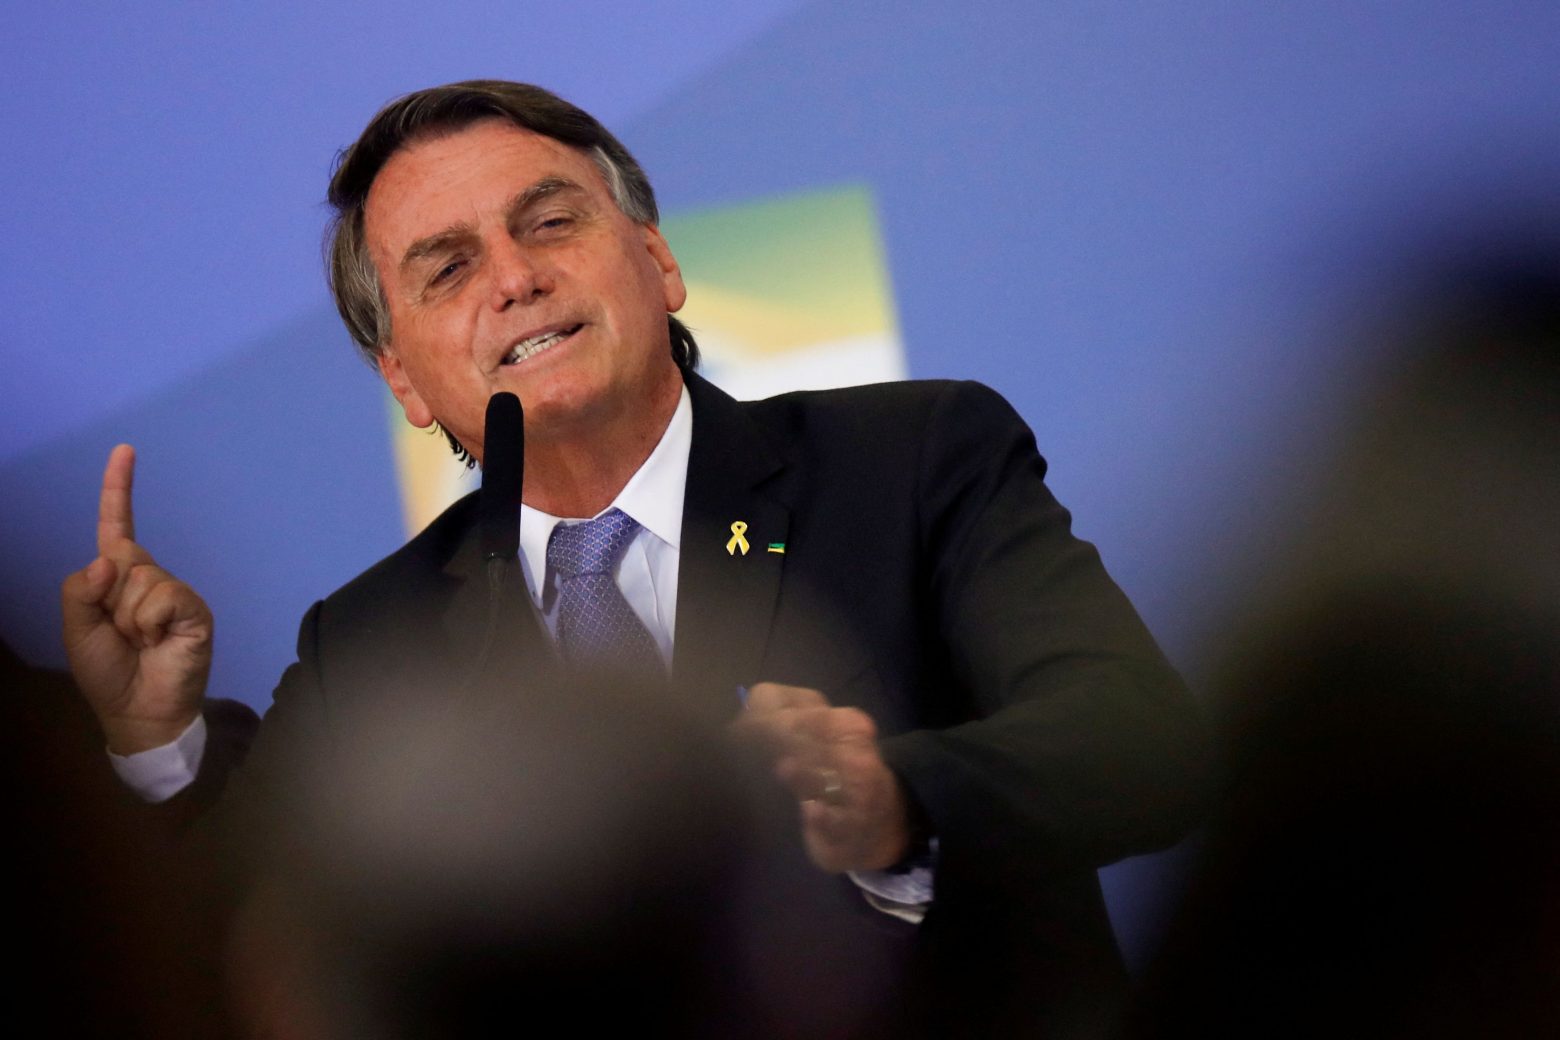 Κοροναϊός: Περισσότερα κρούσματα και θάνατοι στις περιοχές της Βραζιλίας που ψηφίζουν Μπολσονάρου